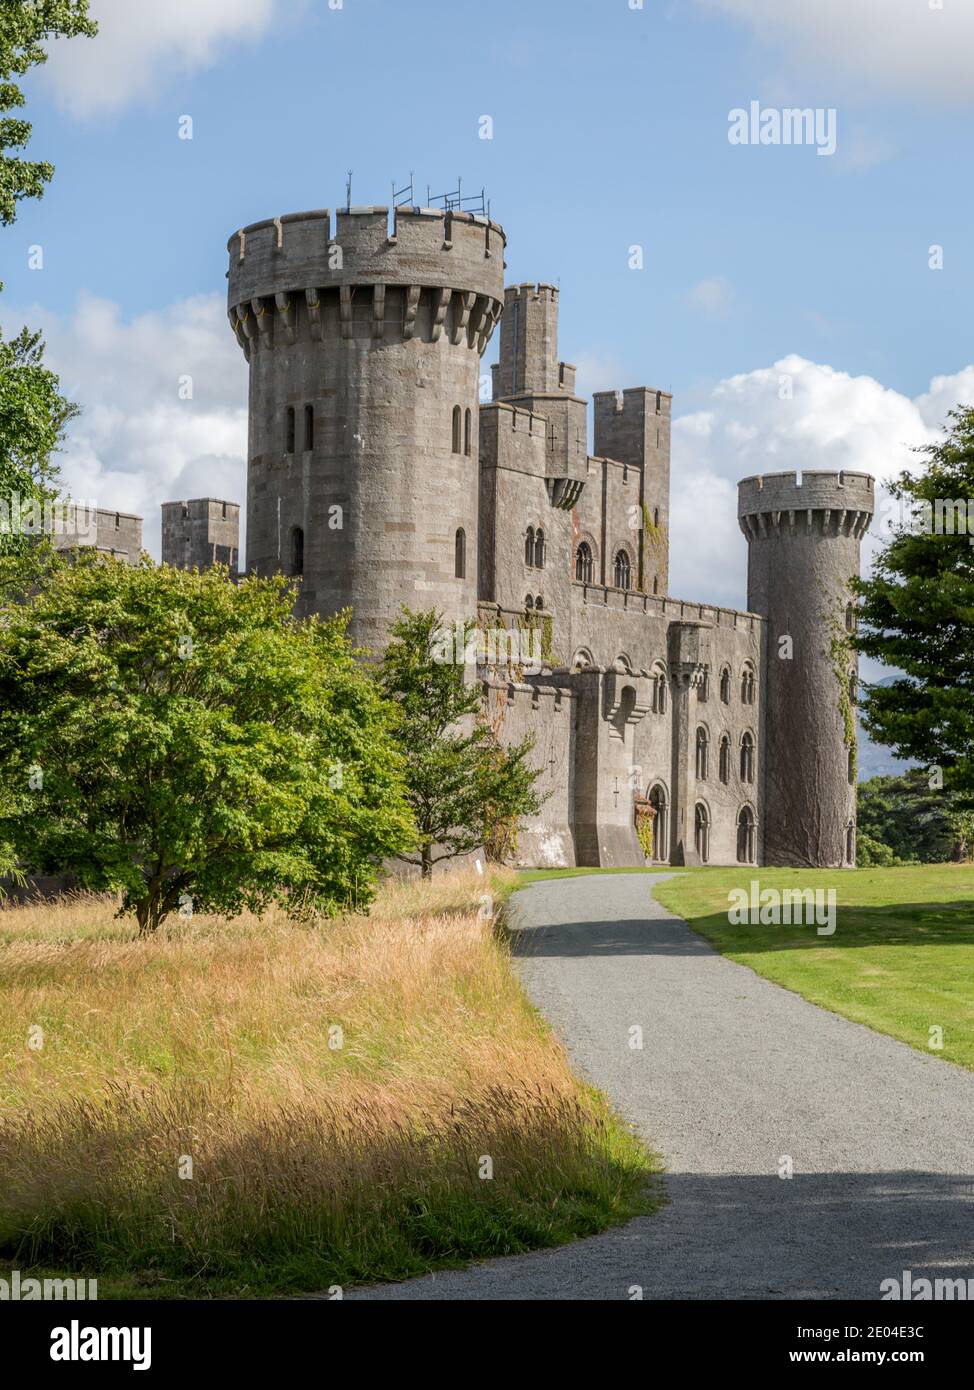 Château de Penrhyn dans le Nord du Pays de Galles est une maison de campagne construite sous la forme d'un château normand. Il a été construit au 19ème siècle entre 1822 et 1837. Banque D'Images